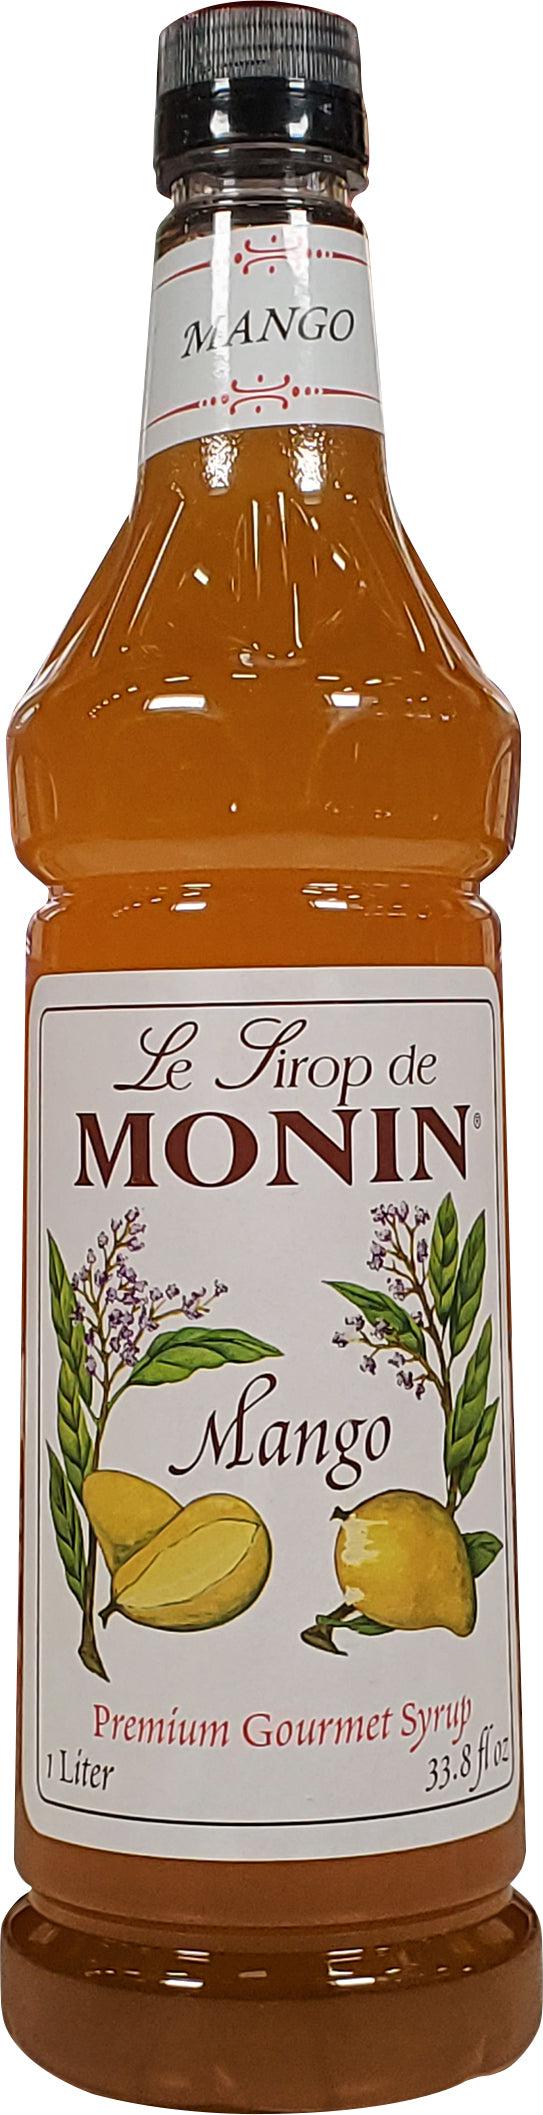 Monin - Mango - Syrup